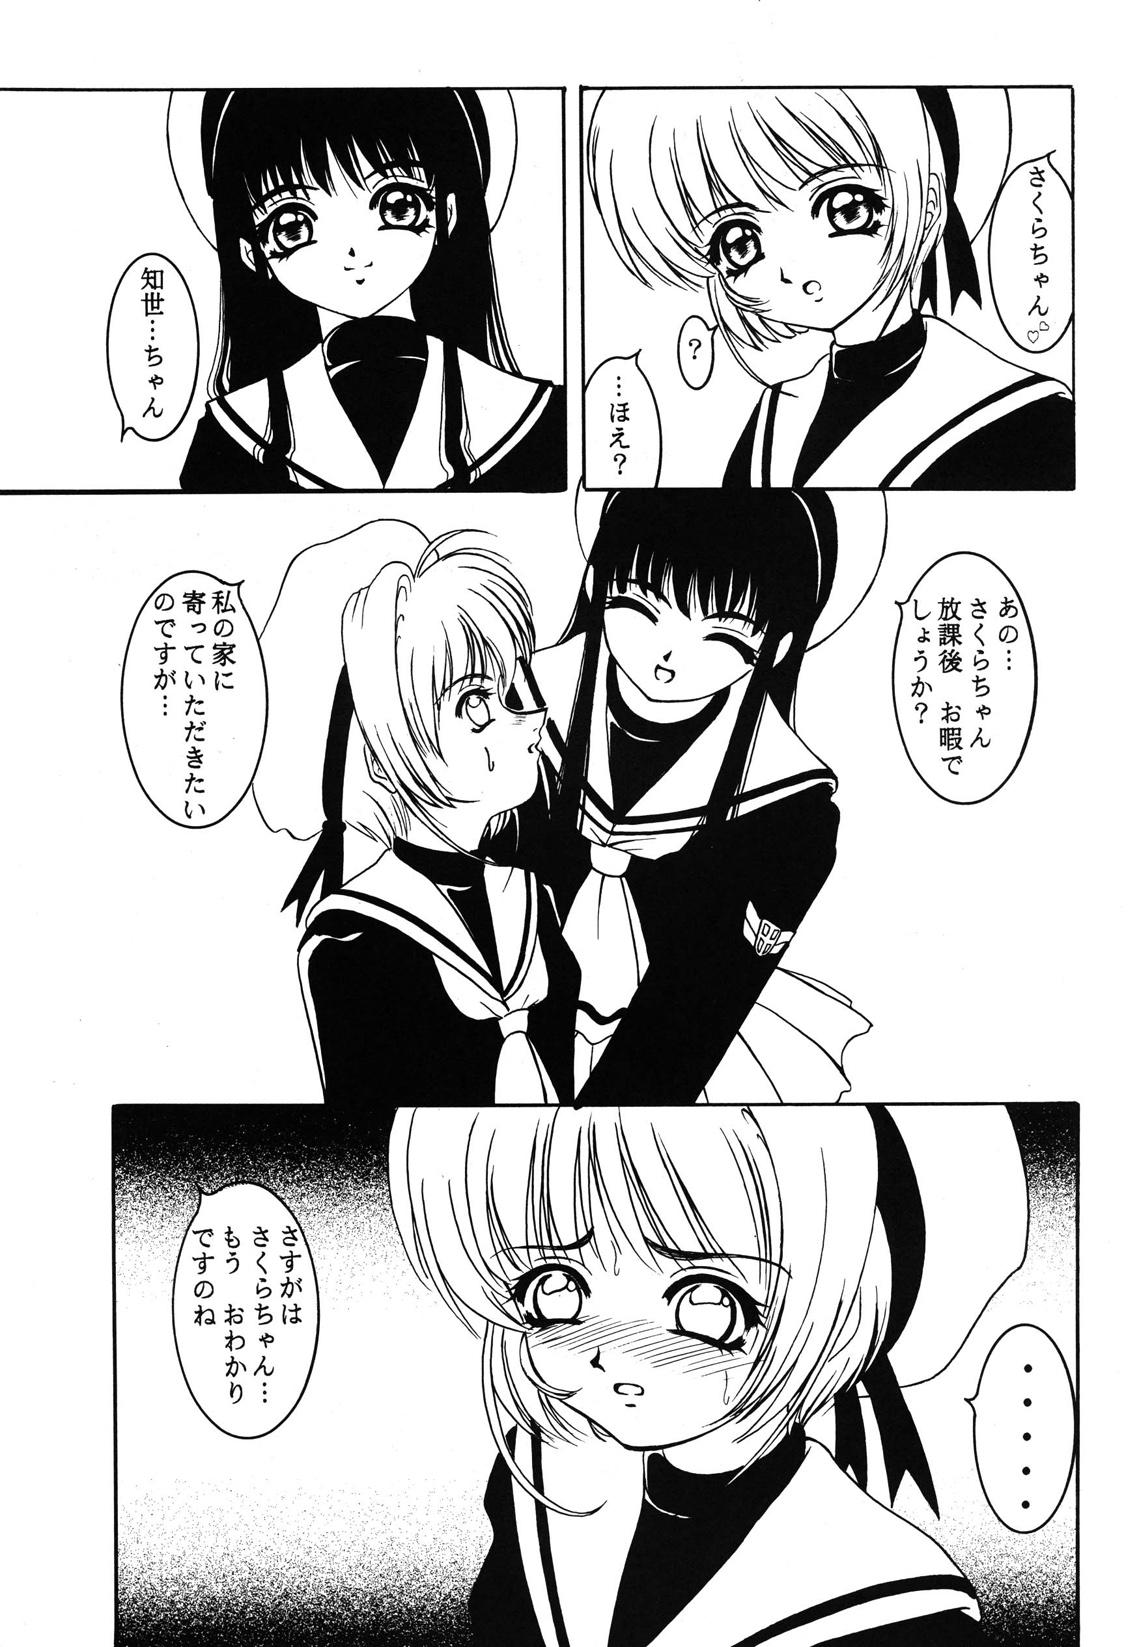 Pussy Lick Hana ni Arashi no Rei hemo Aruzo - Cardcaptor sakura Spit - Page 4